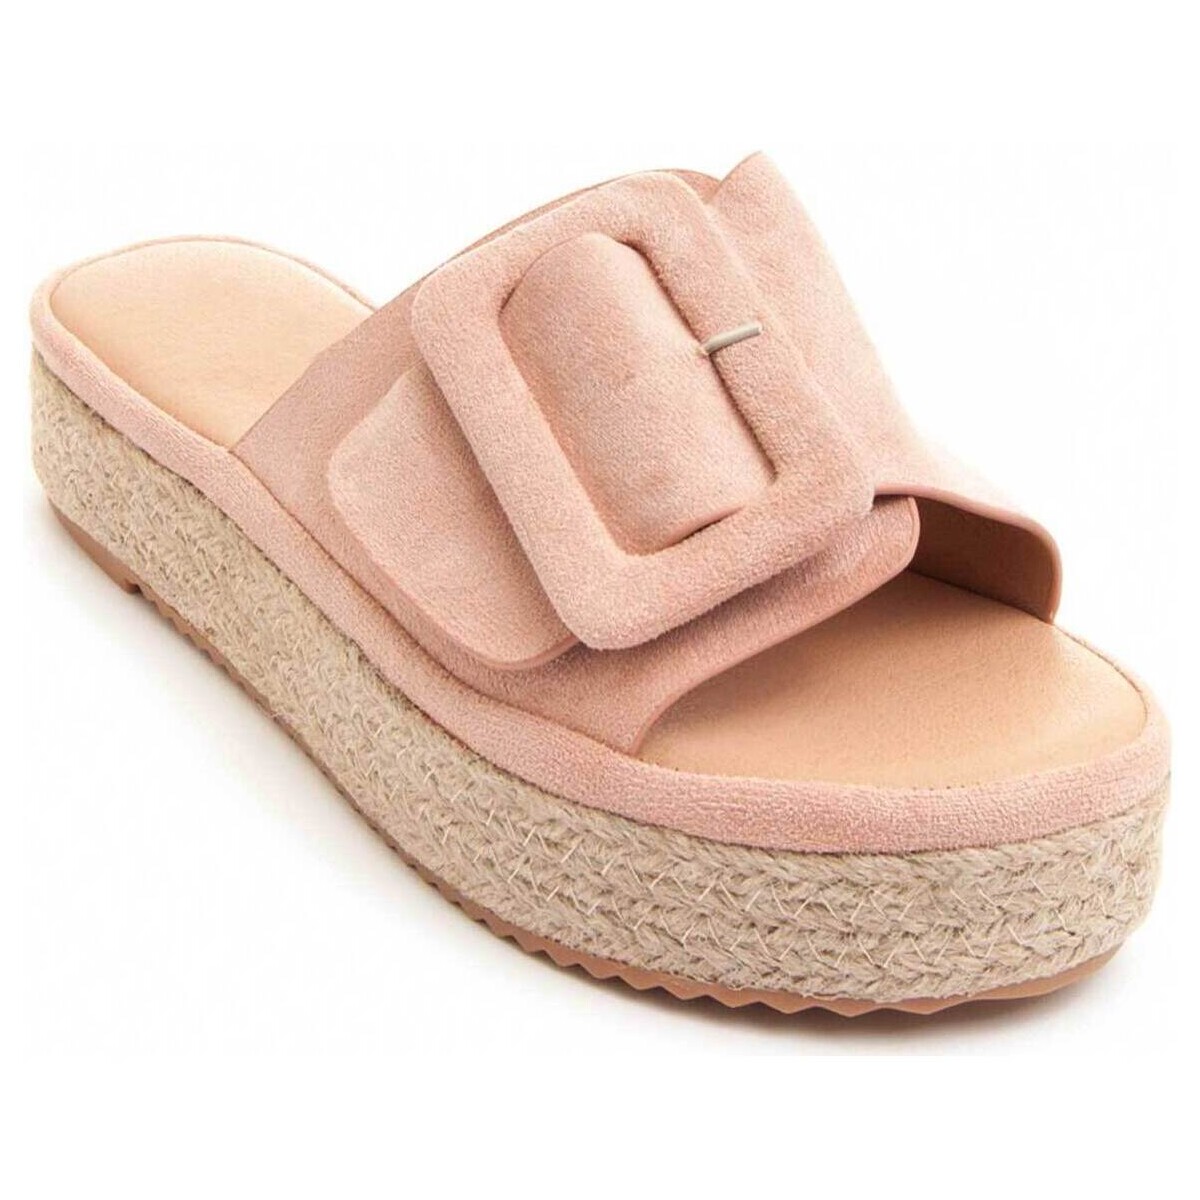 Pantofi Femei Sandale Bozoom 83198 roz